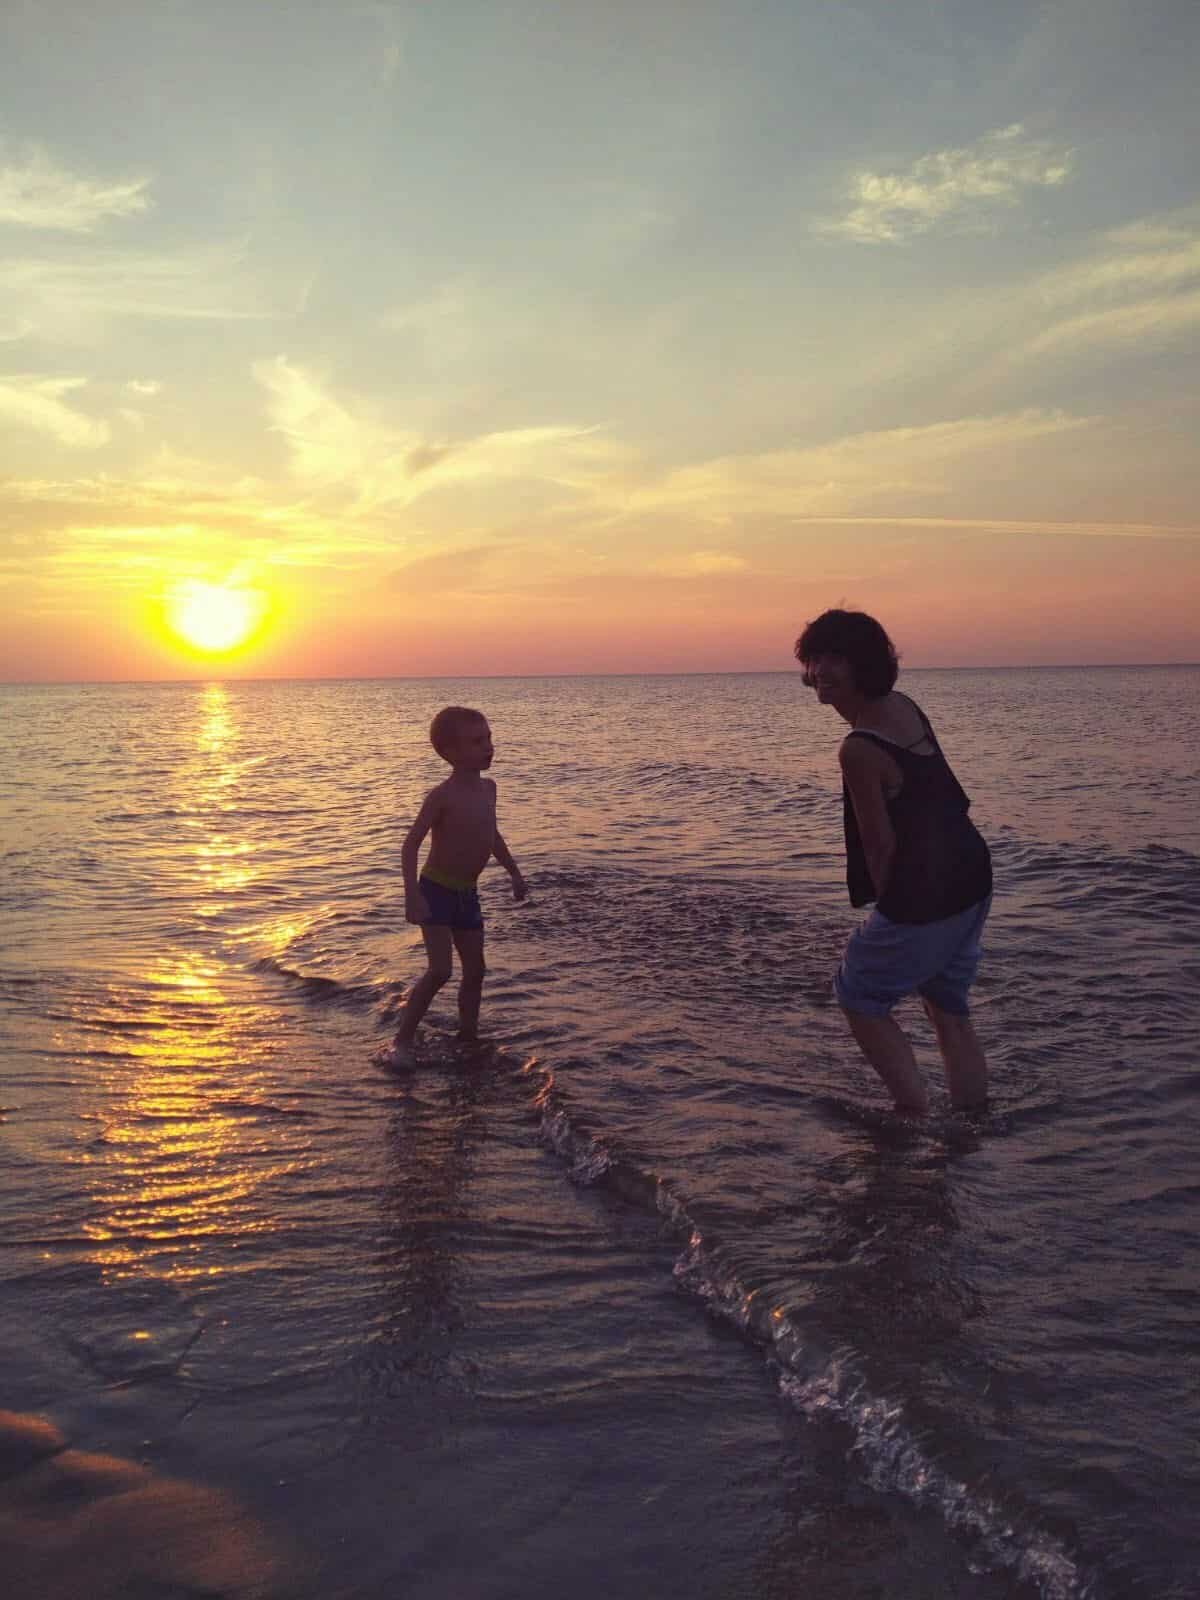 wychowanie - radosny obrazek znad morza, mama i dziecko razem się bawią